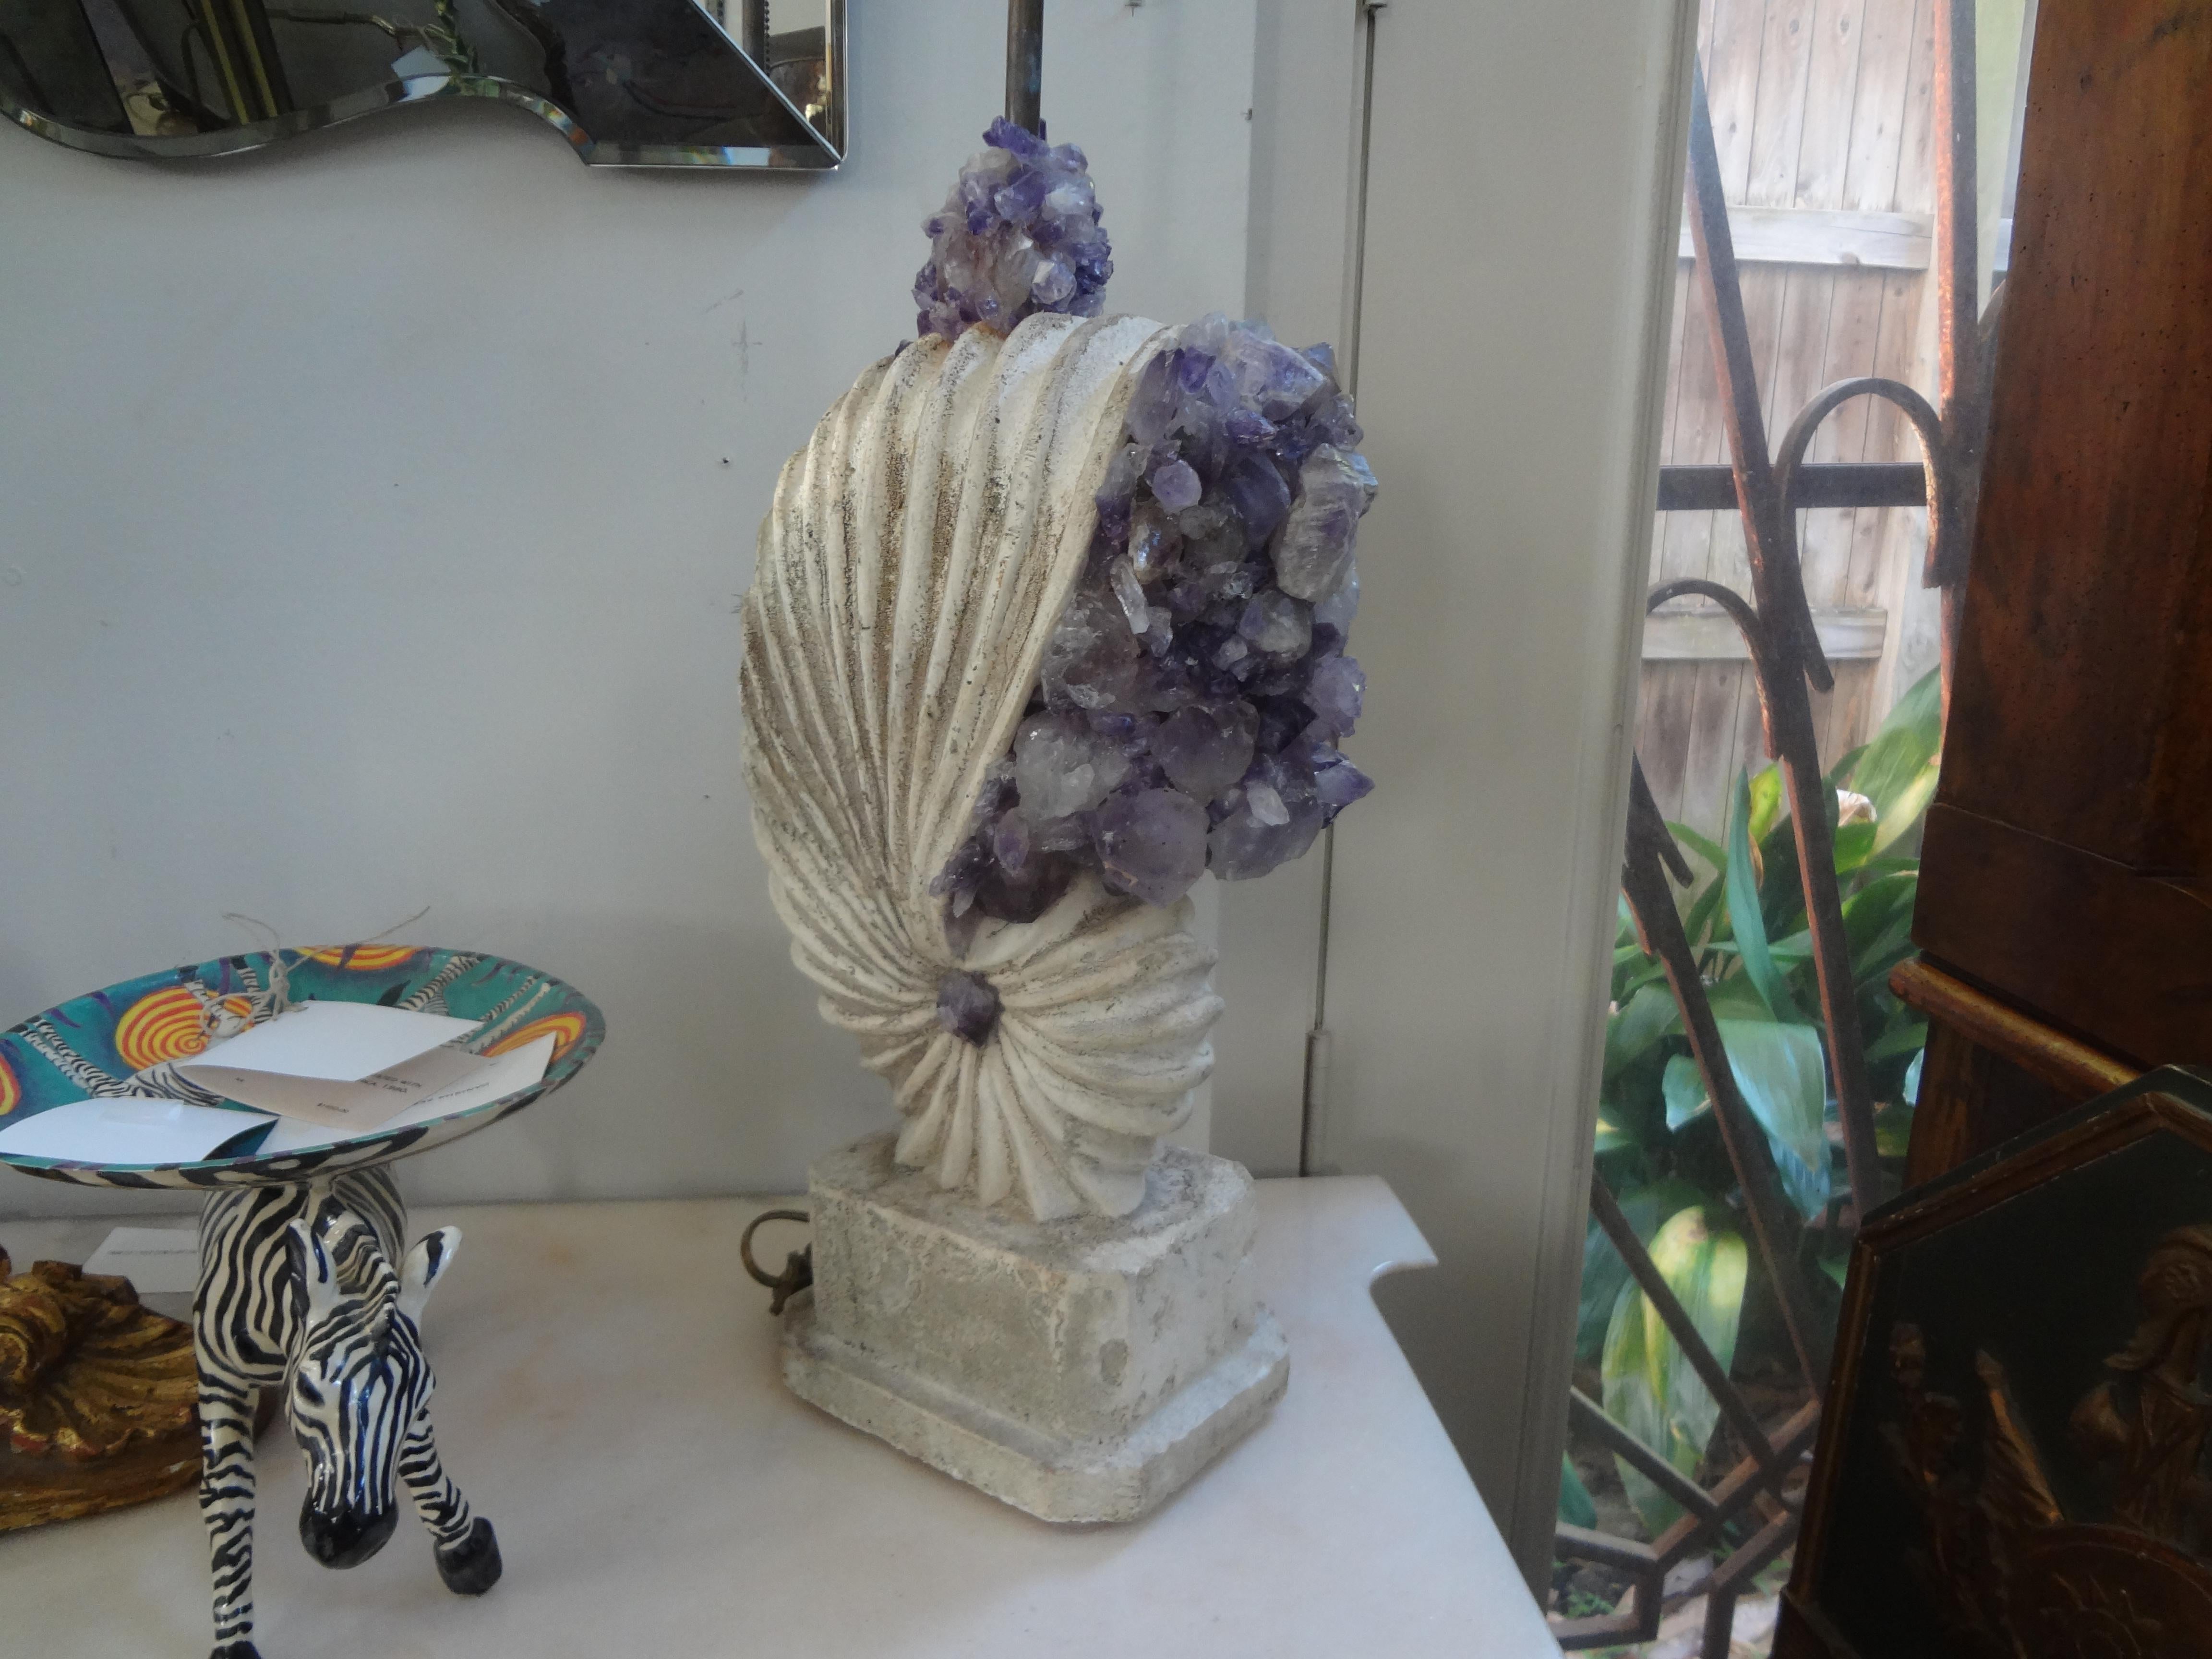 Lampe en pierre en forme de coquillage Nautilus incrustée de cristaux de roche améthyste.
Fabuleuse lampe en pierre moulée de style Hollywood Regency en forme de coquille de nautile incrustée de cristaux de roche améthyste.
Cette superbe lampe en